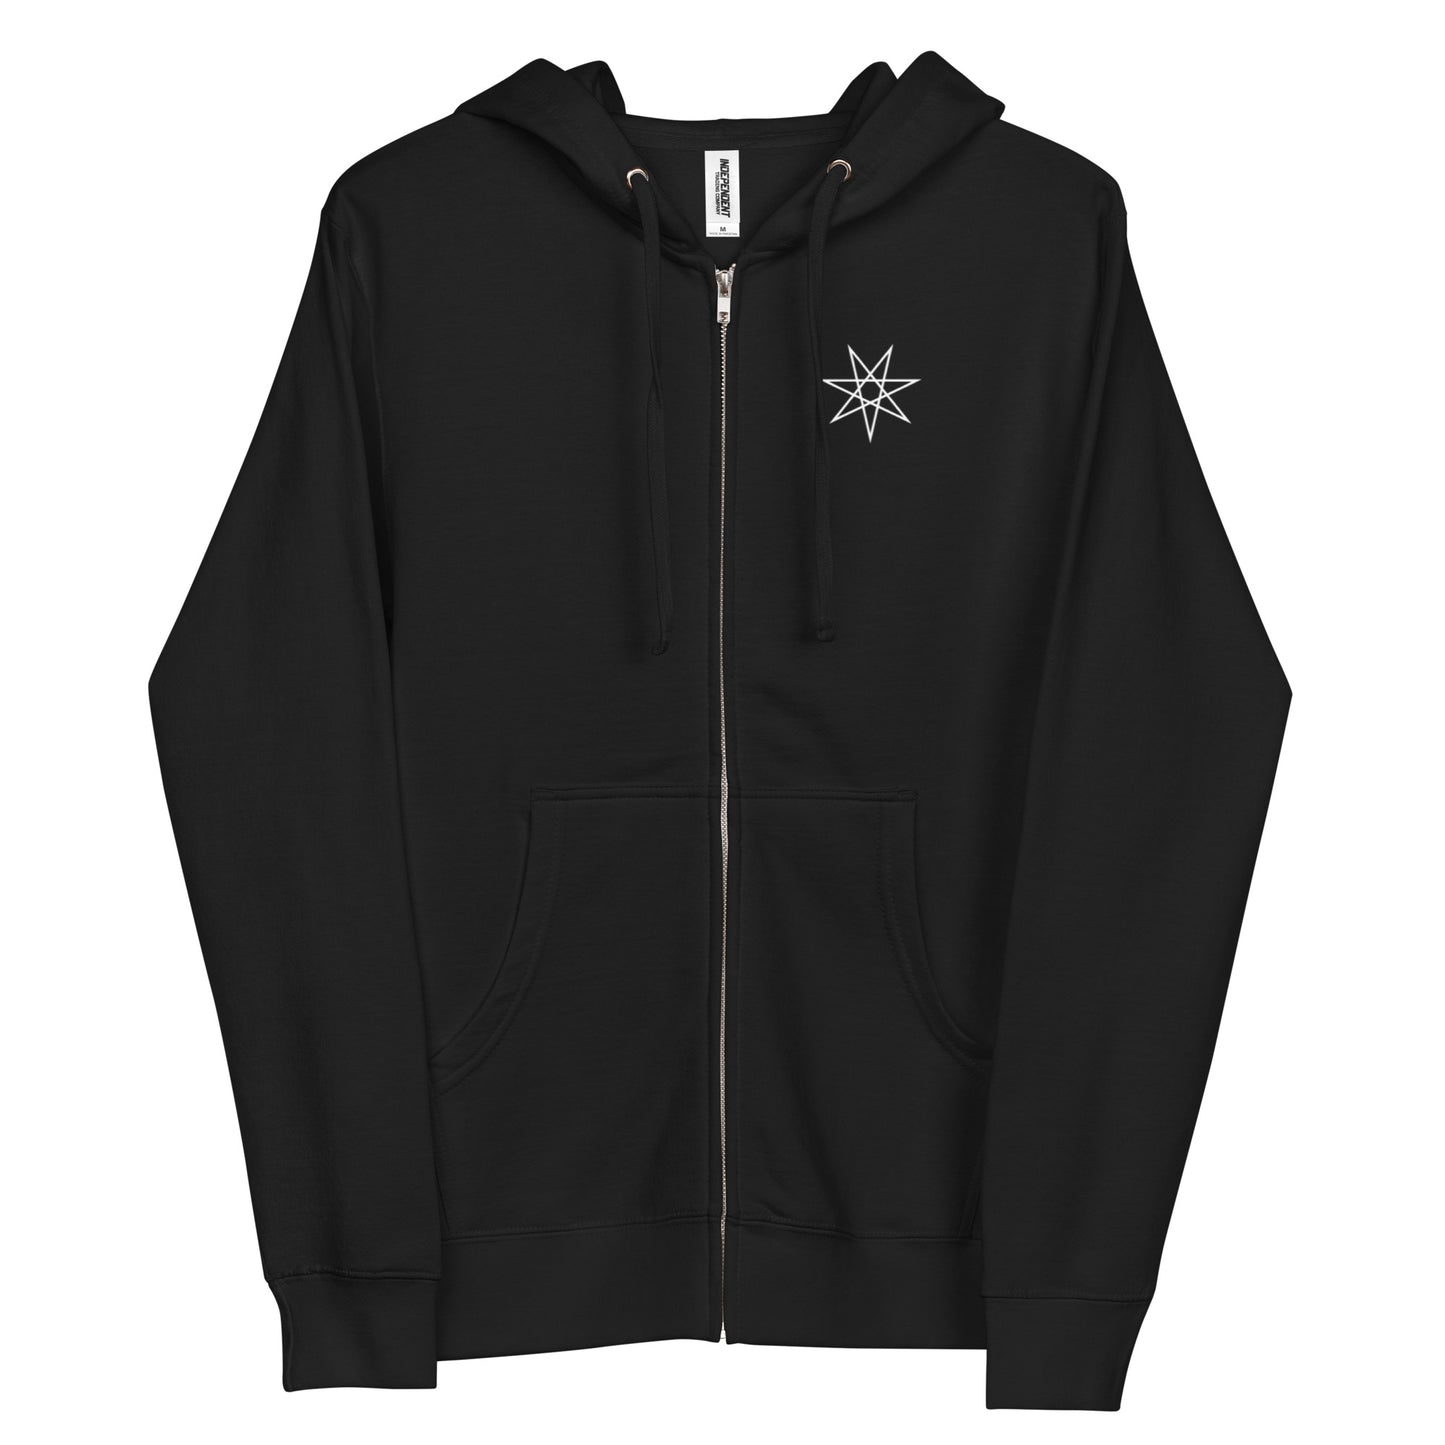 Unisex fleece Lucifer zip up hoodie